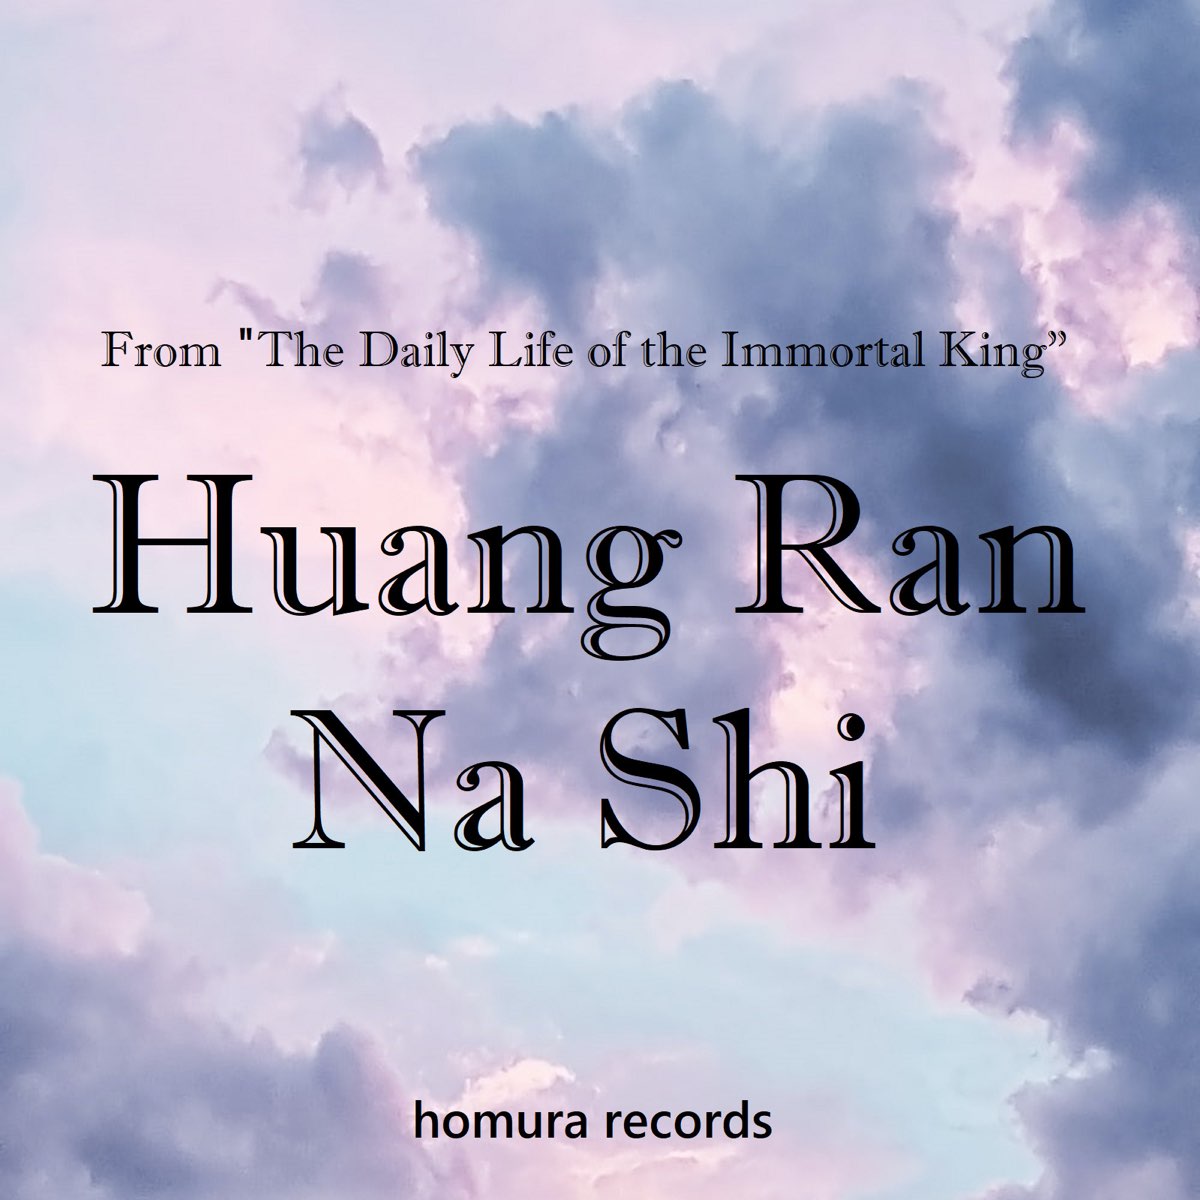 Listen to Xian Wang de Richang Shenghuo OST Animation Soundtrack on  Spotify & Apple Music